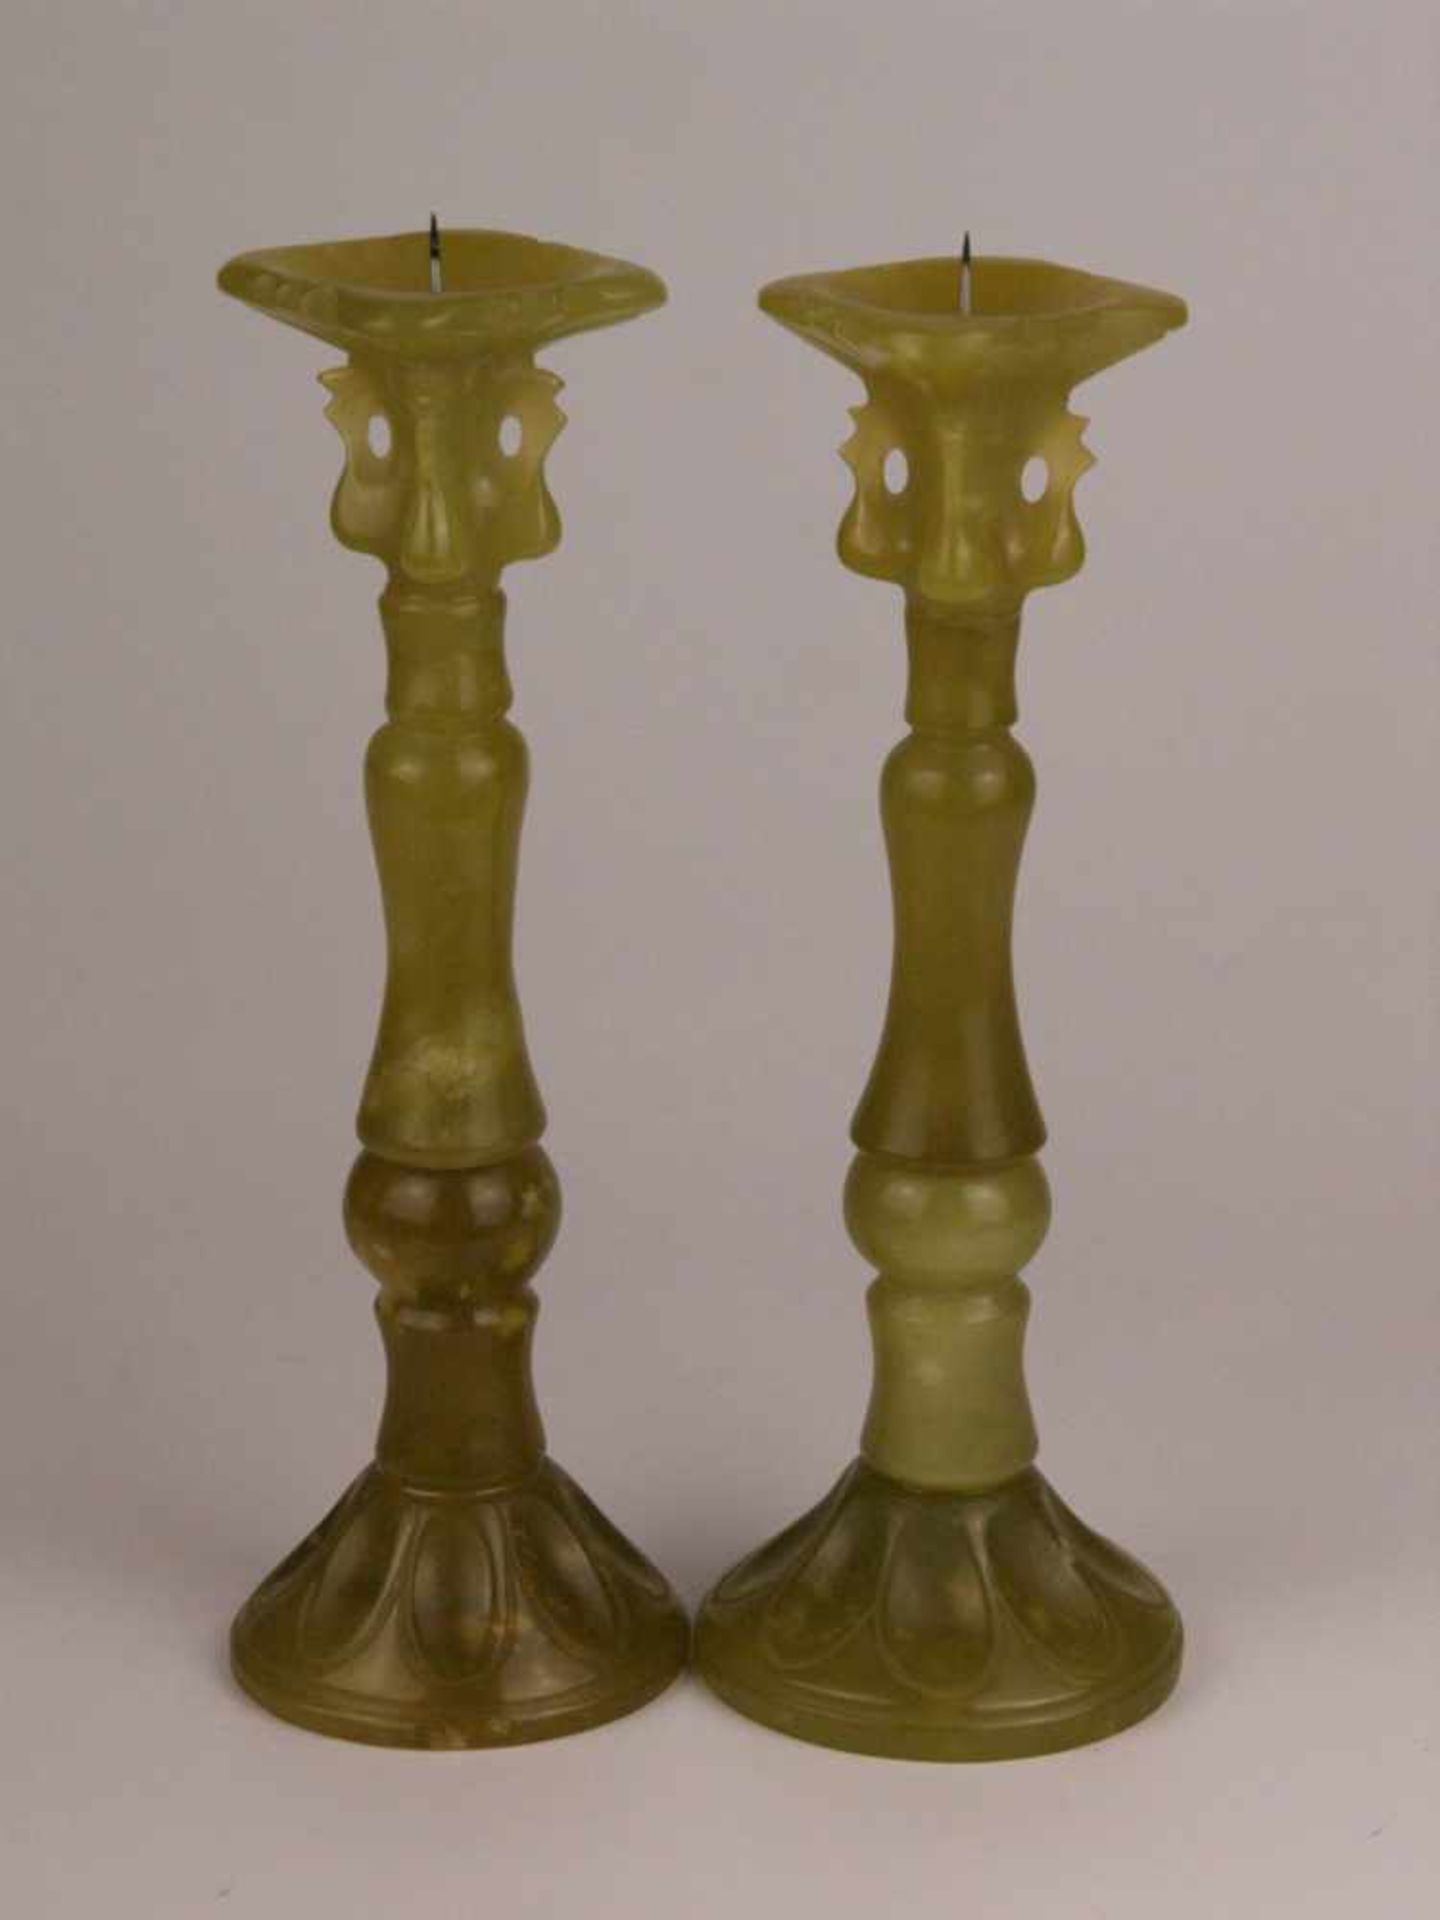 Paar Jade-Kerzenhalter- gelblich grüne Nephrit-Jade,teils unterschiedlich getönt,geschnitzt, aus